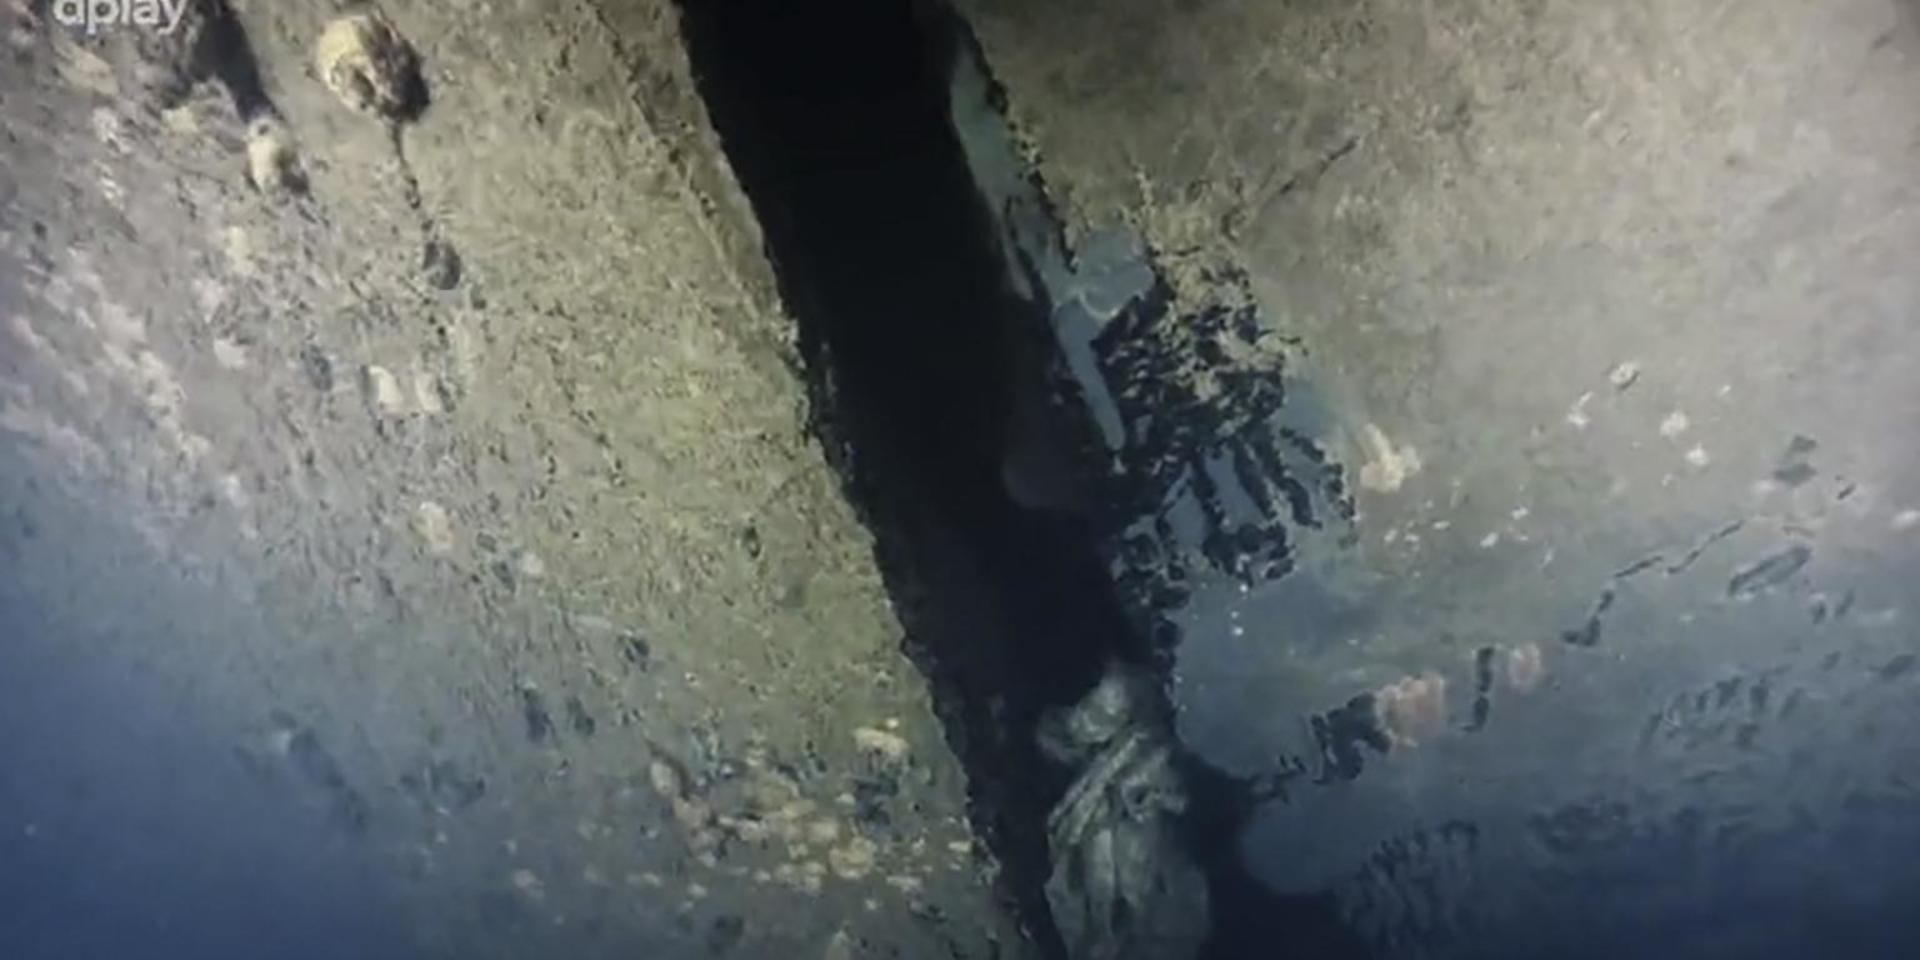 Bilder som filmteamets dykrobot tog visar bland annat ett fyra meter långt, förut okänt hål i Estonias skrov. Det bedöms ha varit delvis dolt mot havsbotten tidigare. Vraket har rört sig något efter förlisningen 1994.